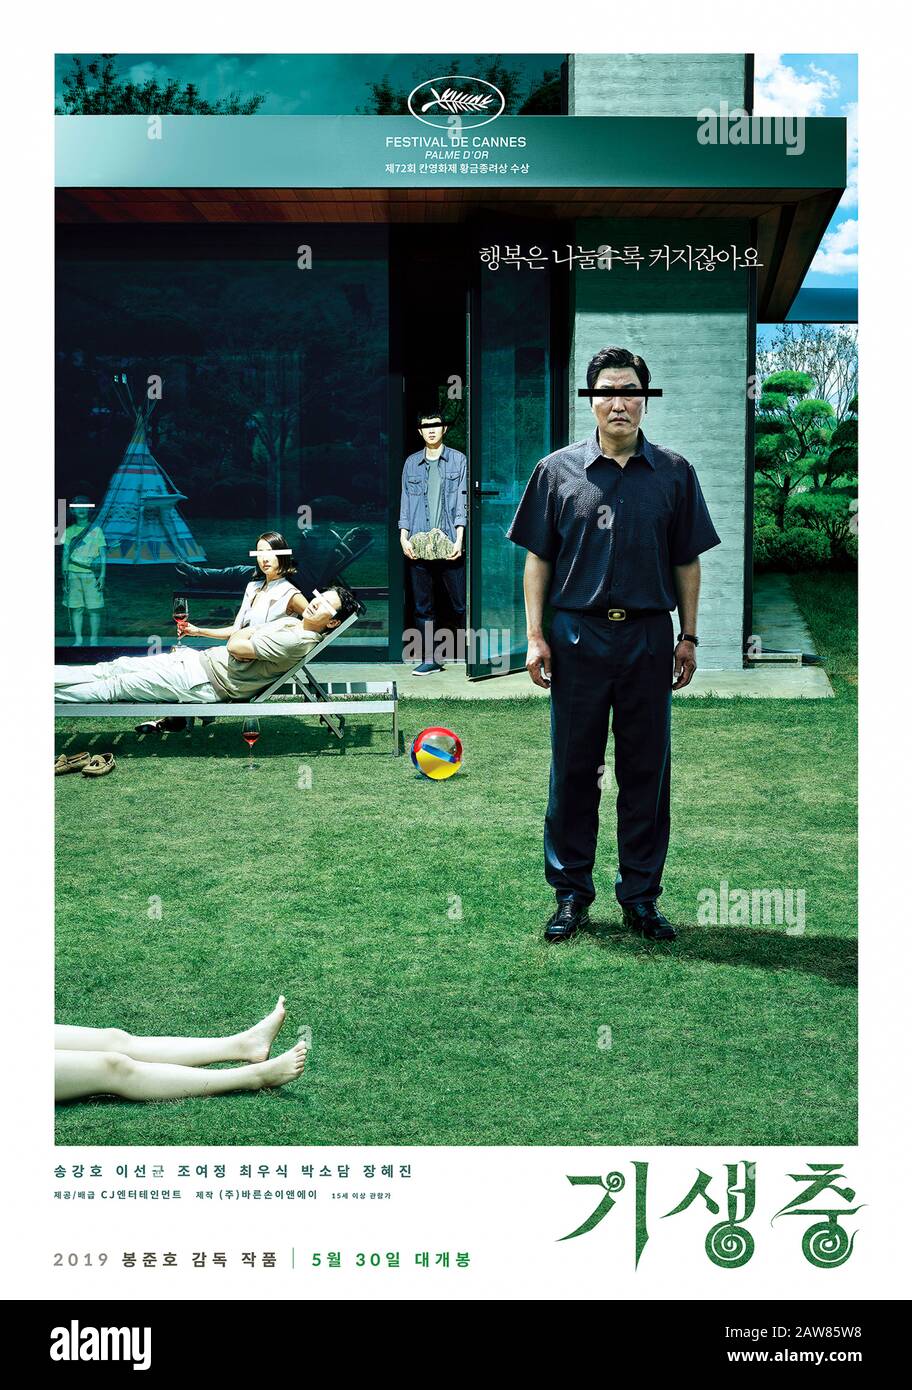 Parasite [Gisaengchung] (2019) unter der Regie von Bong Joon Ho und mit Kang-ho Song, Sun-kyun Lee und Yeo-jeong Jo in den Hauptrollen. Eine arme Familie, die sich mit einer reichen Familie unbegierig macht, führt zu unerwarteten Ergebnissen in diesem klugen südkoreanischen Thriller. Stockfoto